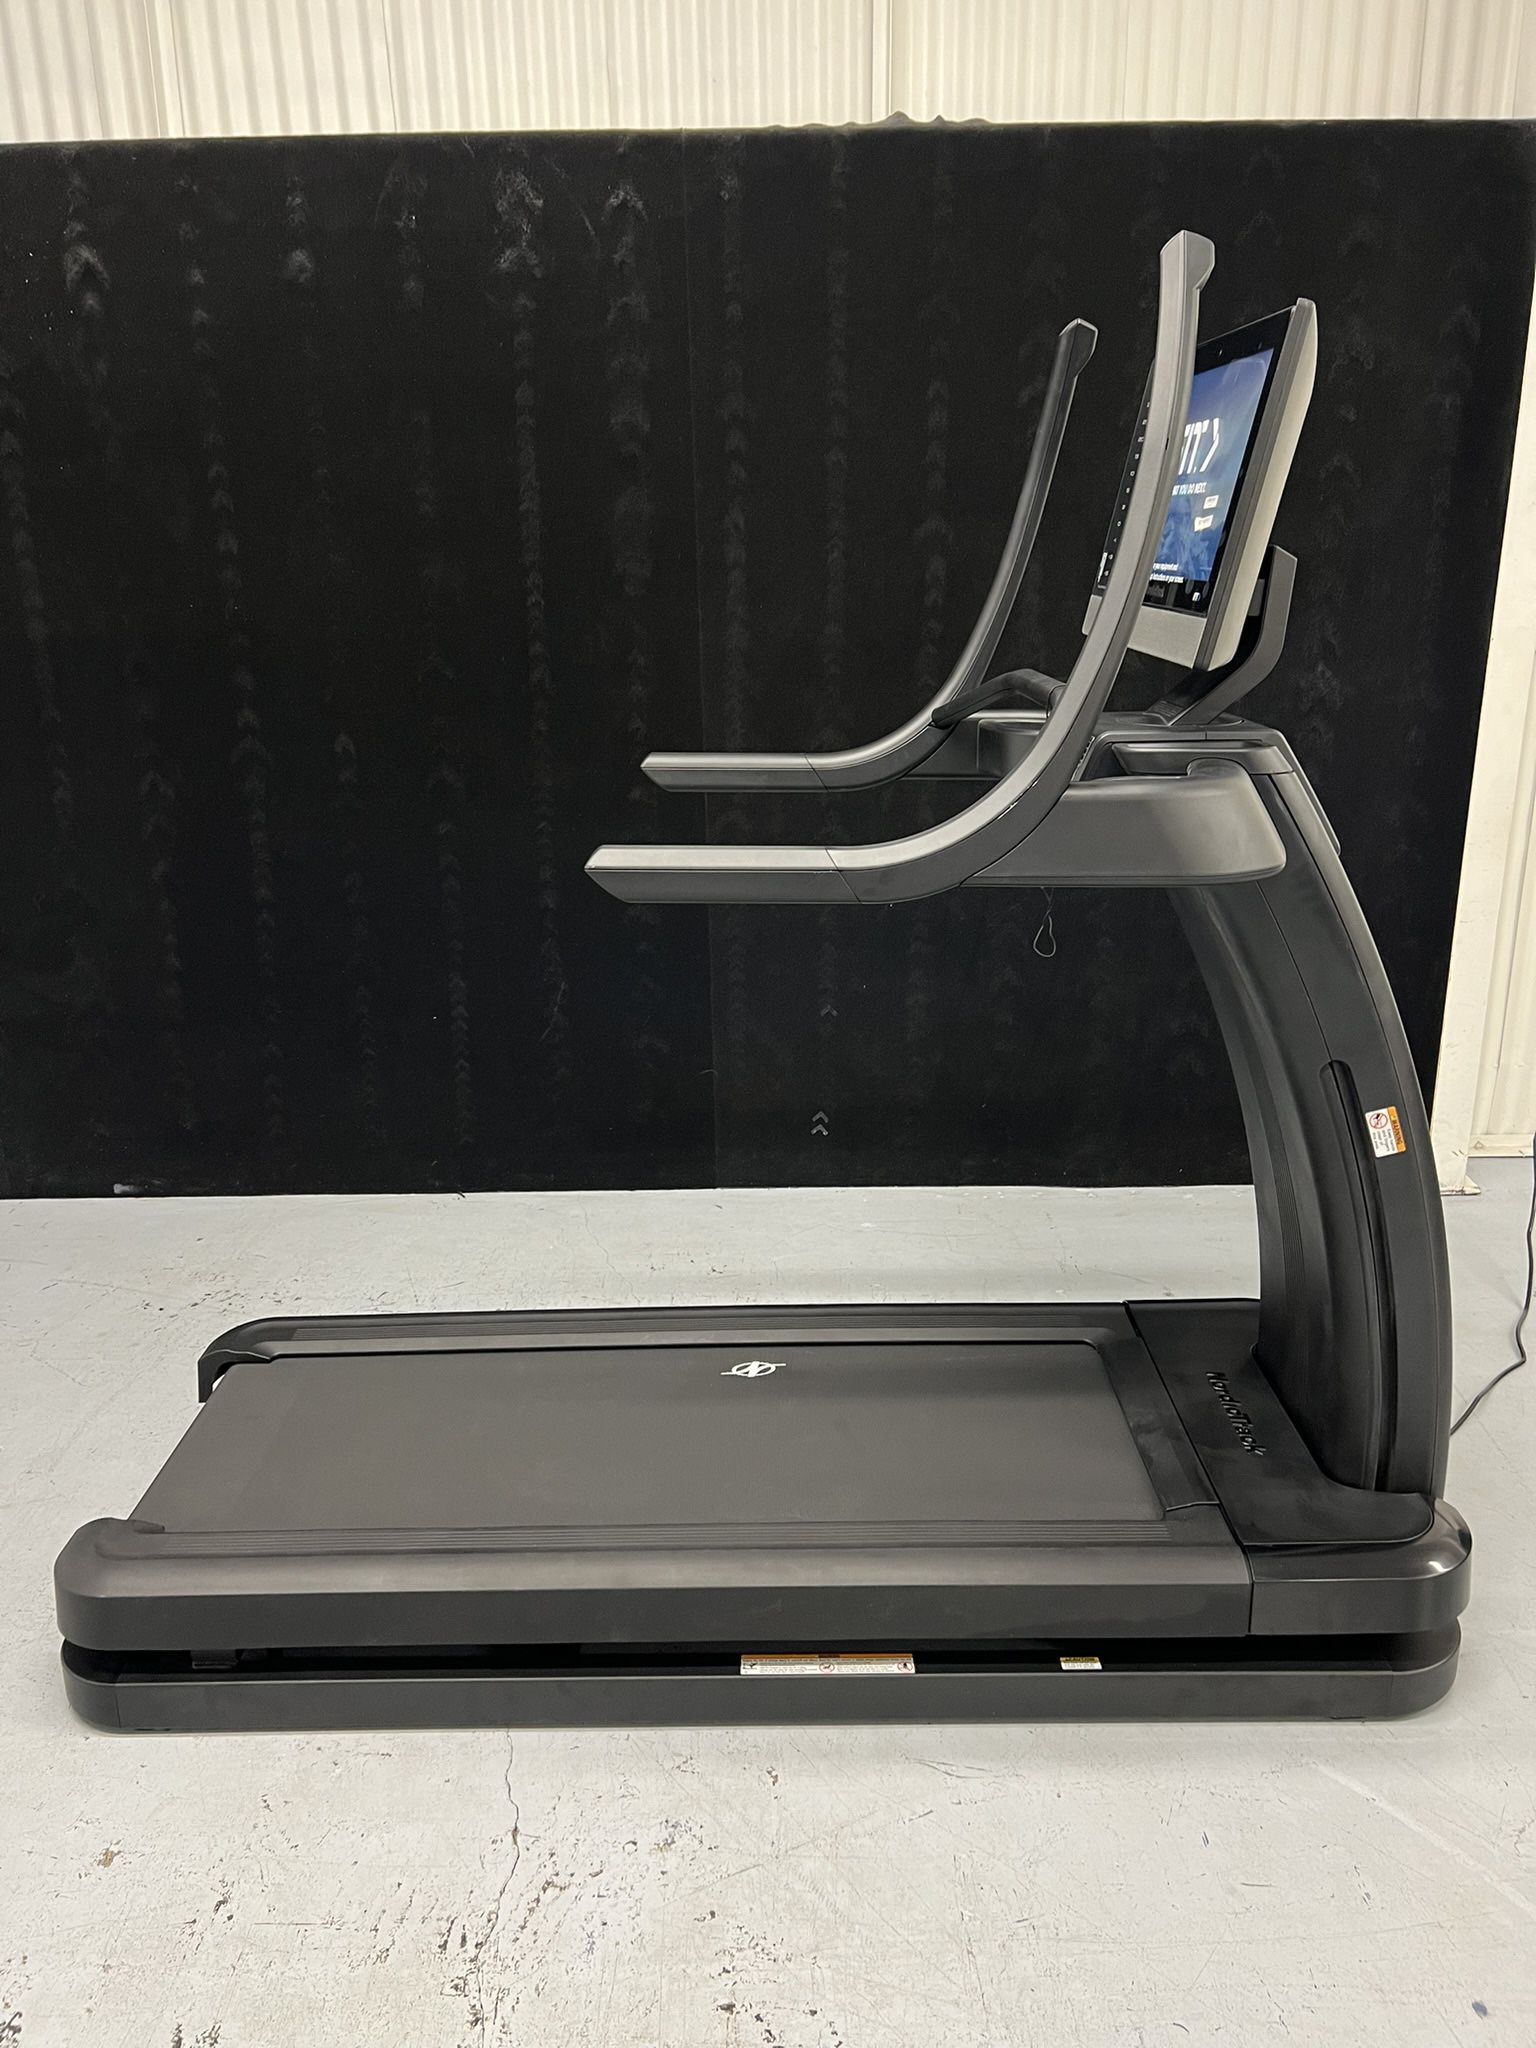 iFit NordicTrack x22i Commercial Treadmill